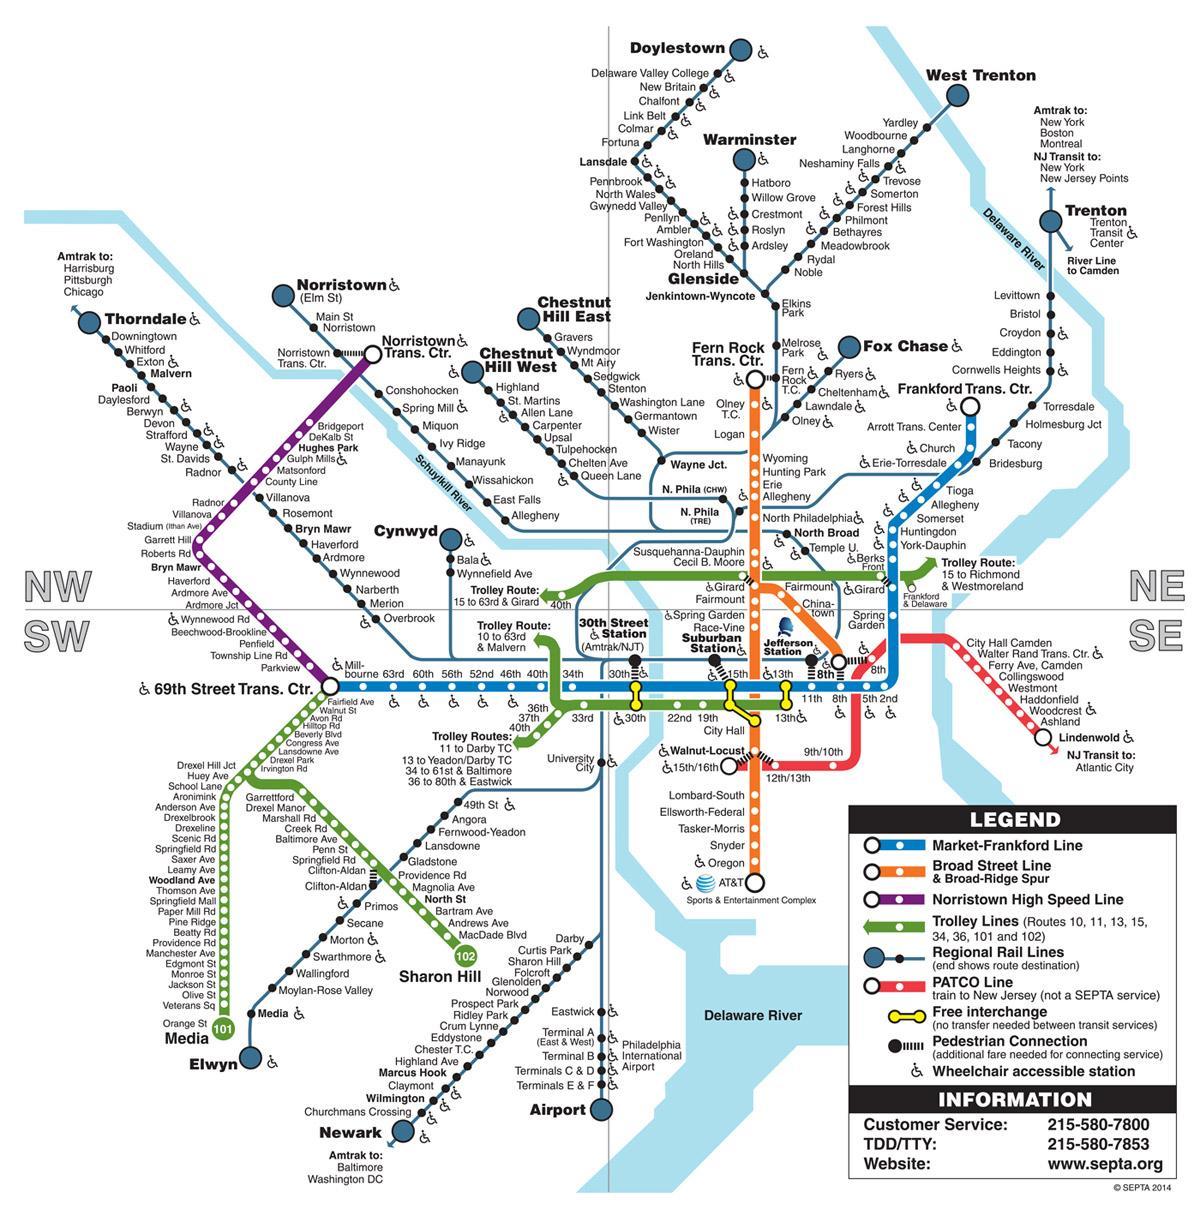 метро мапата Филаделфија